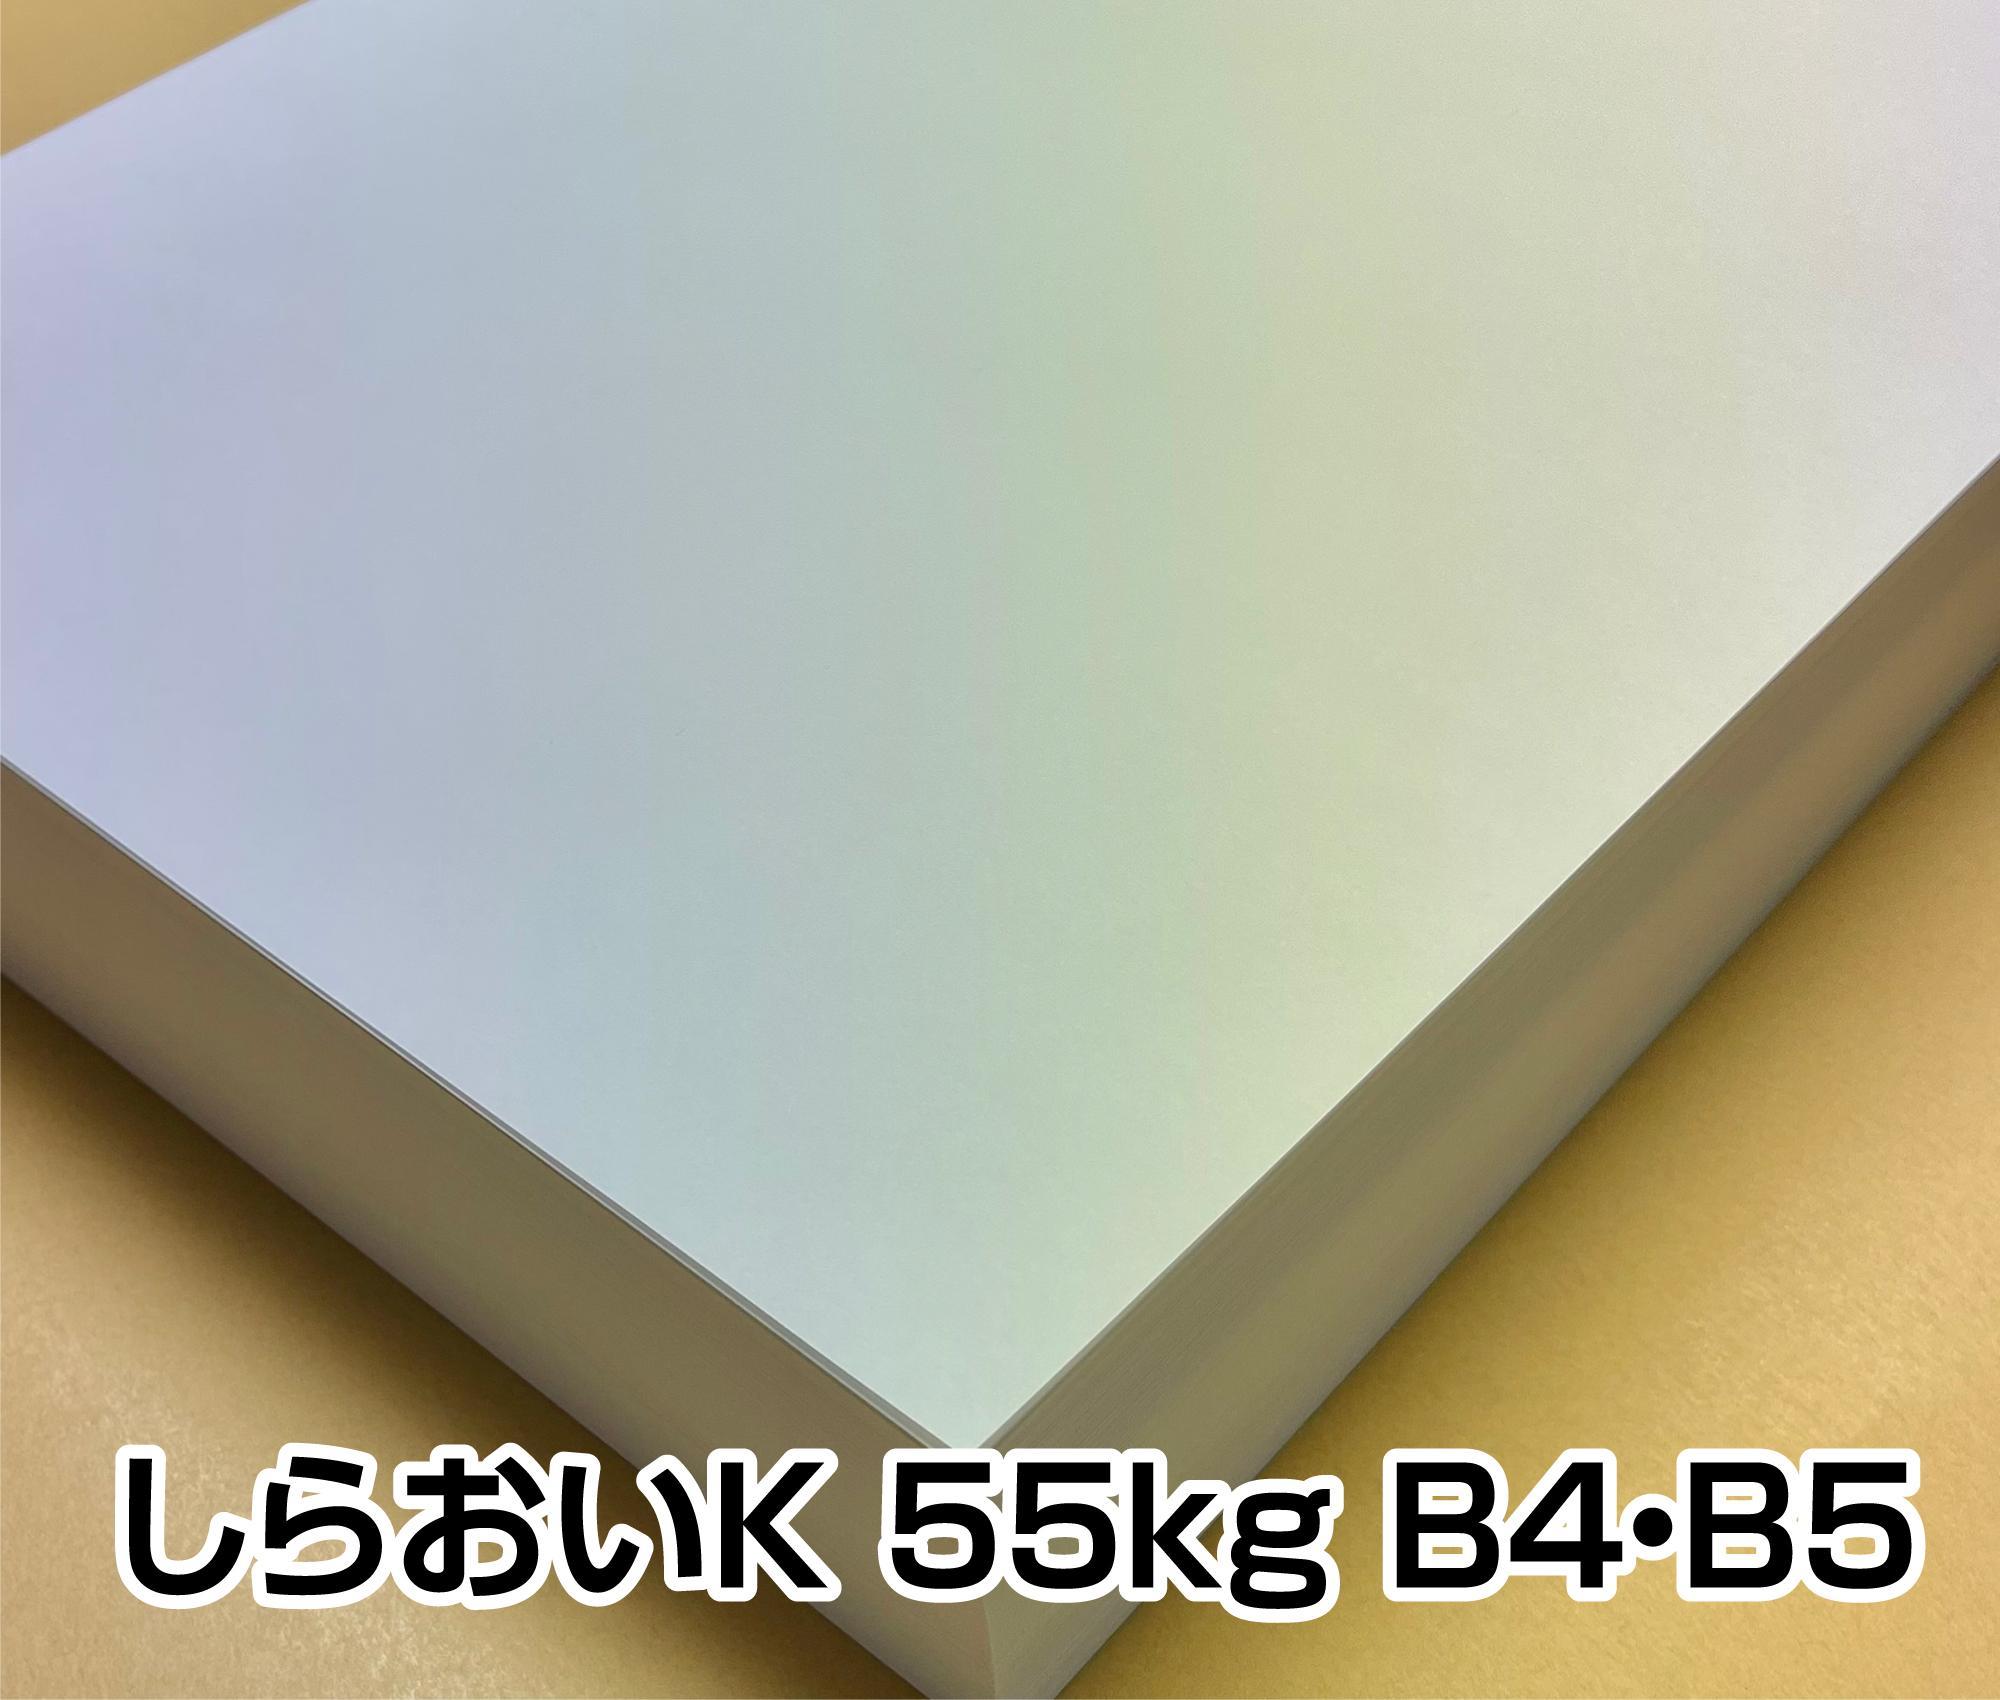 上質紙　しらおいK 55kg 64g A3/A4/B4/B5